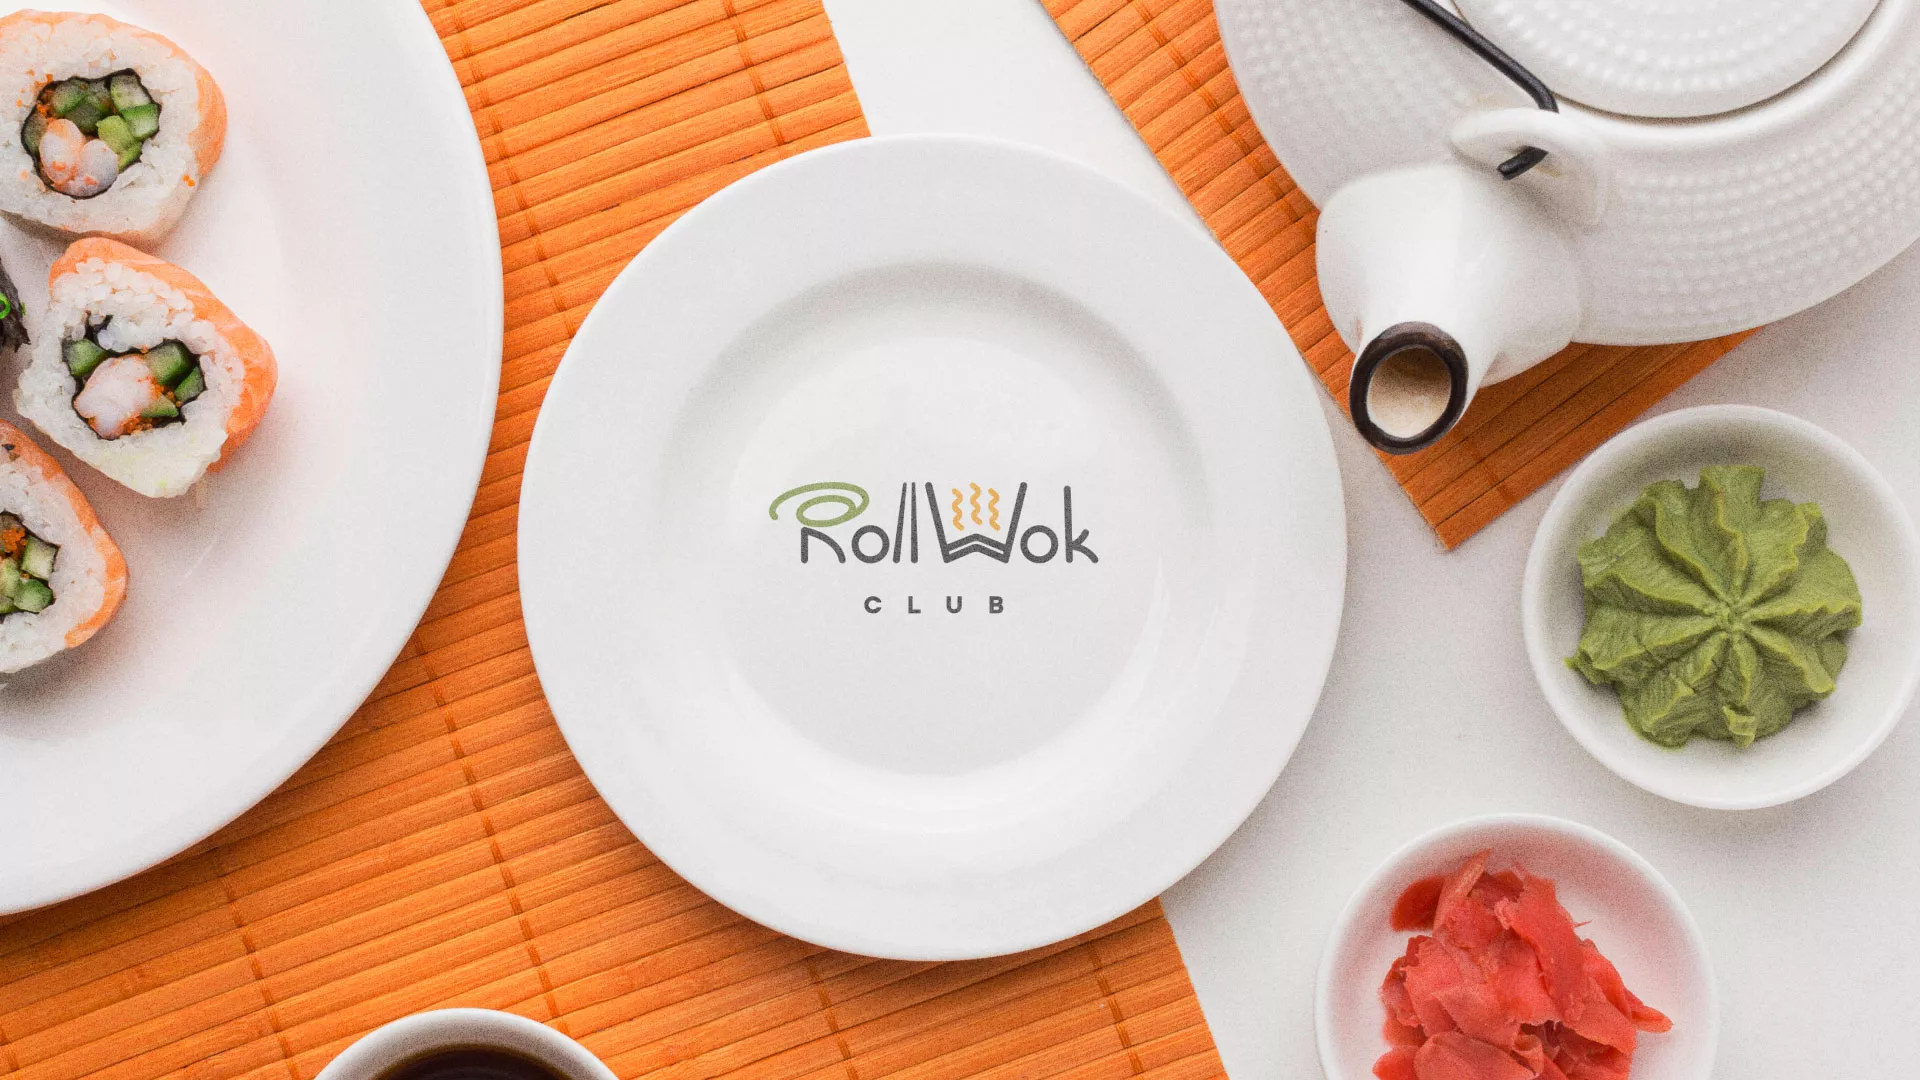 Разработка логотипа и фирменного стиля суши-бара «Roll Wok Club» в Куйбышеве